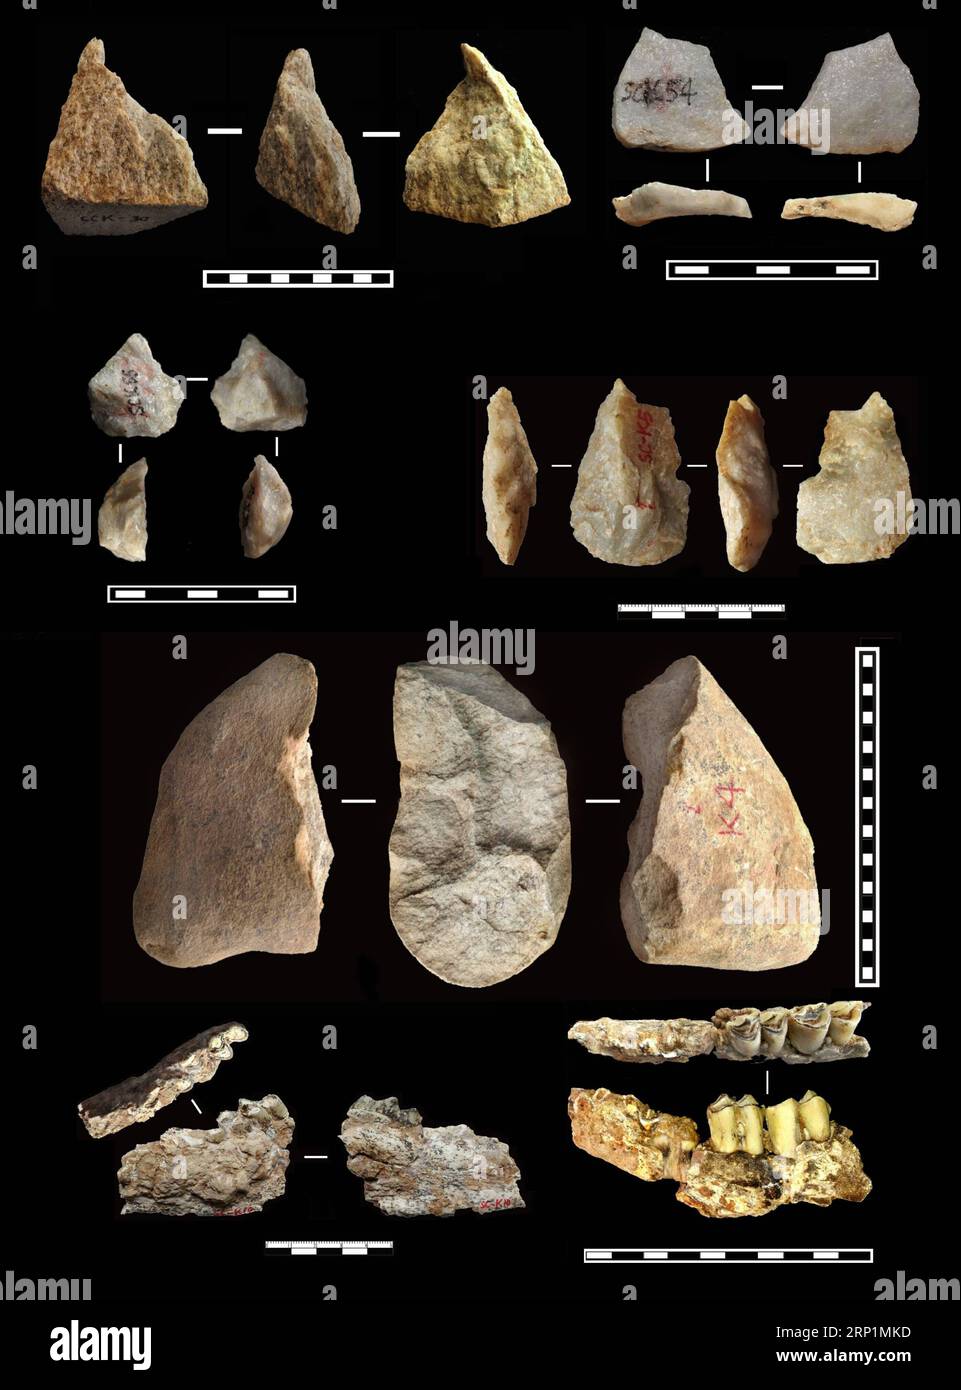 (180714) -- LANTIAN, 14 luglio 2018 -- la grafica mostra gli strumenti paleplitici scavati e i fossili di animali dal più antico strato di suolo, da 2,1 a 2,12 milioni di anni fa. Gli antichi strumenti scoperti nella contea di Lantian, nella provincia dello Shaanxi della Cina nordoccidentale da un gruppo di ricerca composto da archeologi cinesi e britannici suggeriscono che potrebbe esserci stata una presenza di ominidi al di fuori dell'Africa prima di quanto si pensasse in precedenza, secondo uno studio pubblicato mercoledì in natura. In undici diversi strati di terreni fossili, sono stati trovati 80 manufatti in pietra, tra i quali il più antico può essere datato a 2,12 milioni di anni Foto Stock